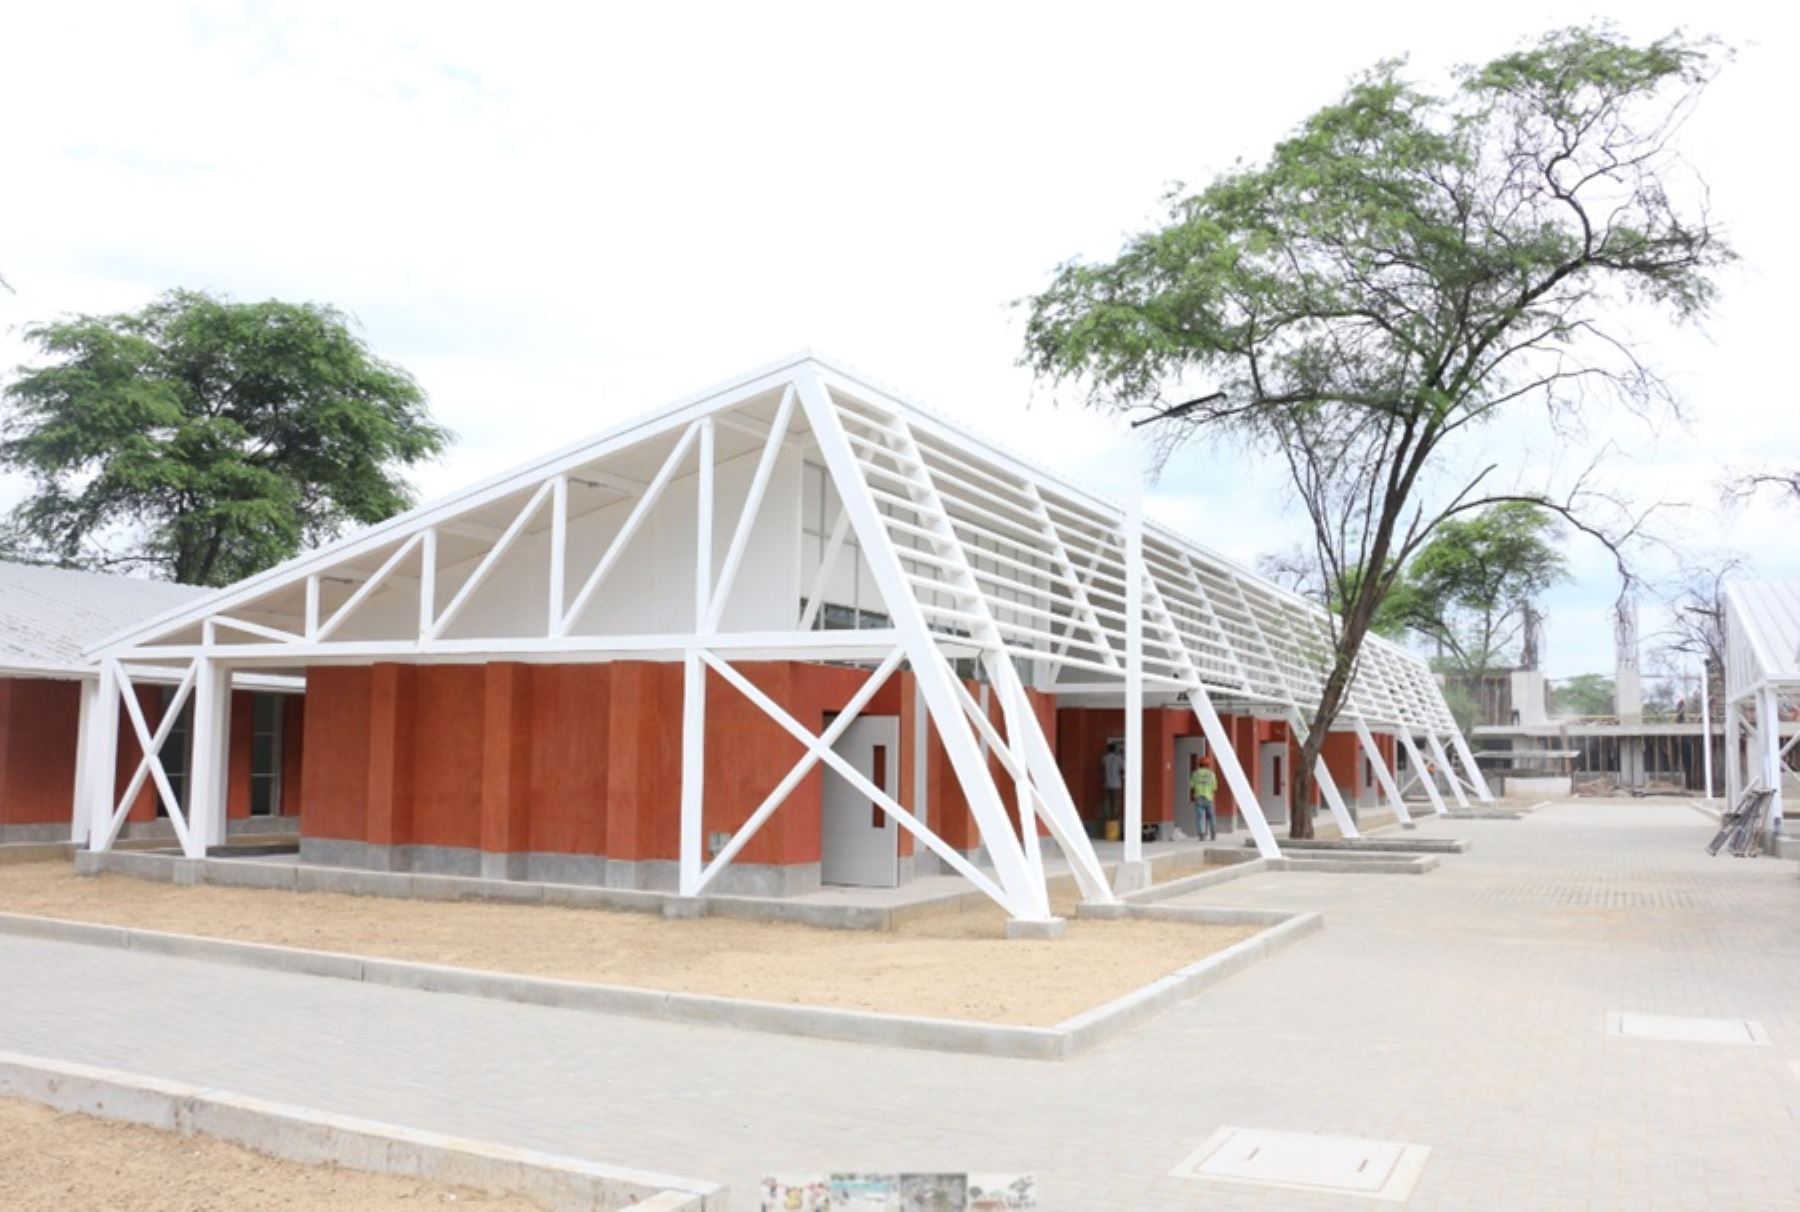 La Universidad Católica Sedes Sapientiae (UCSS) inauguró su nuevo campus en el distrito de Chulucanas, provincia de Morropón, región Piura, que cuenta con una extensión de cuatro hectáreas, siete pabellones y aforo para 1,317 personas, además de laboratorios, biblioteca y áreas administrativas.